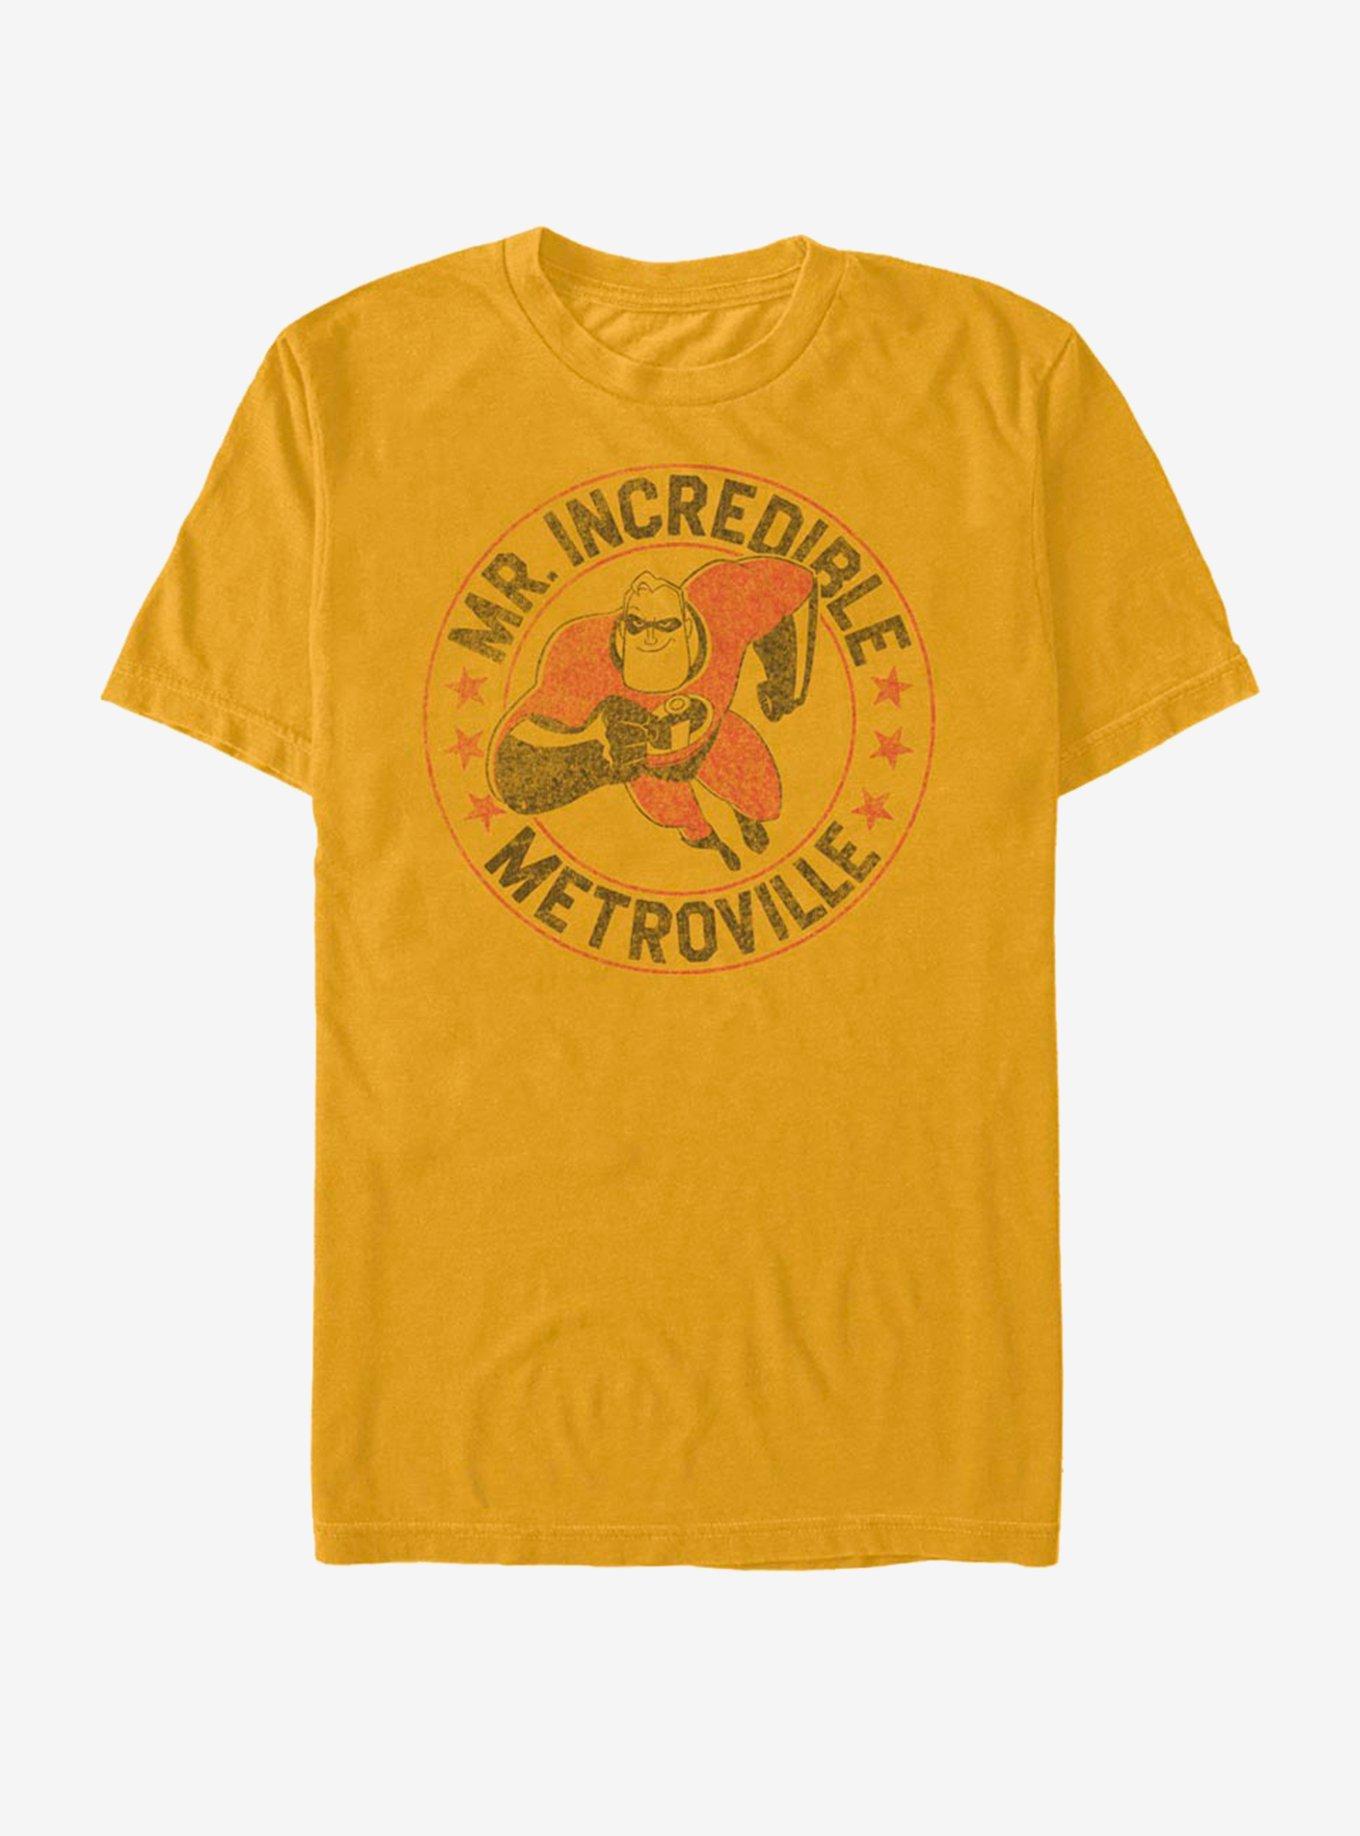 Disney Pixar The Incredibles Metrovilles Finest T-Shirt, GOLD, hi-res